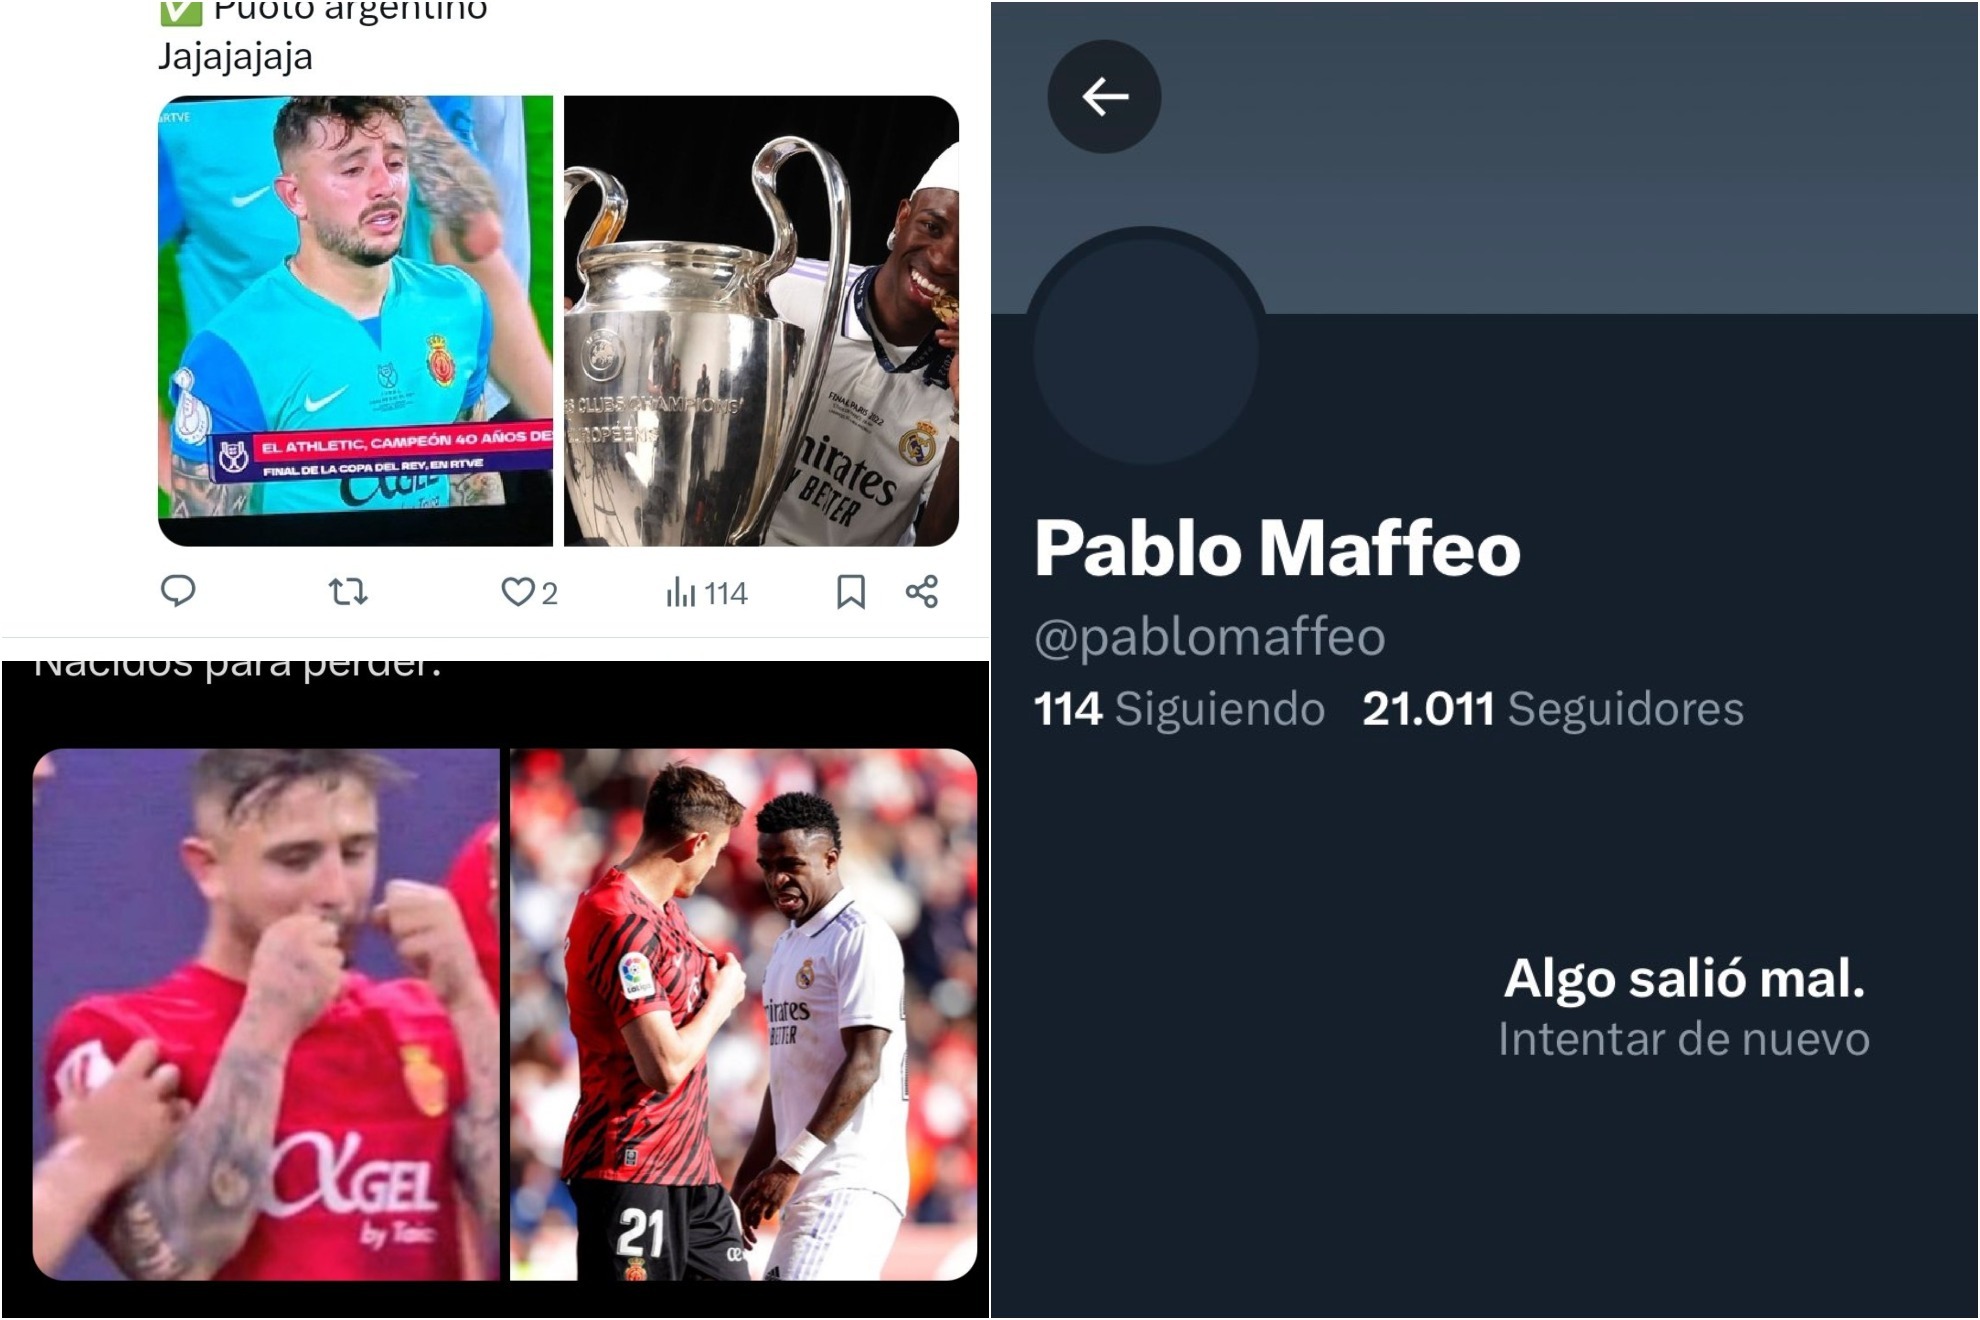 Pablo Maffeo, obligado a cerrar su cuenta de Twitter por insultos y amenazas